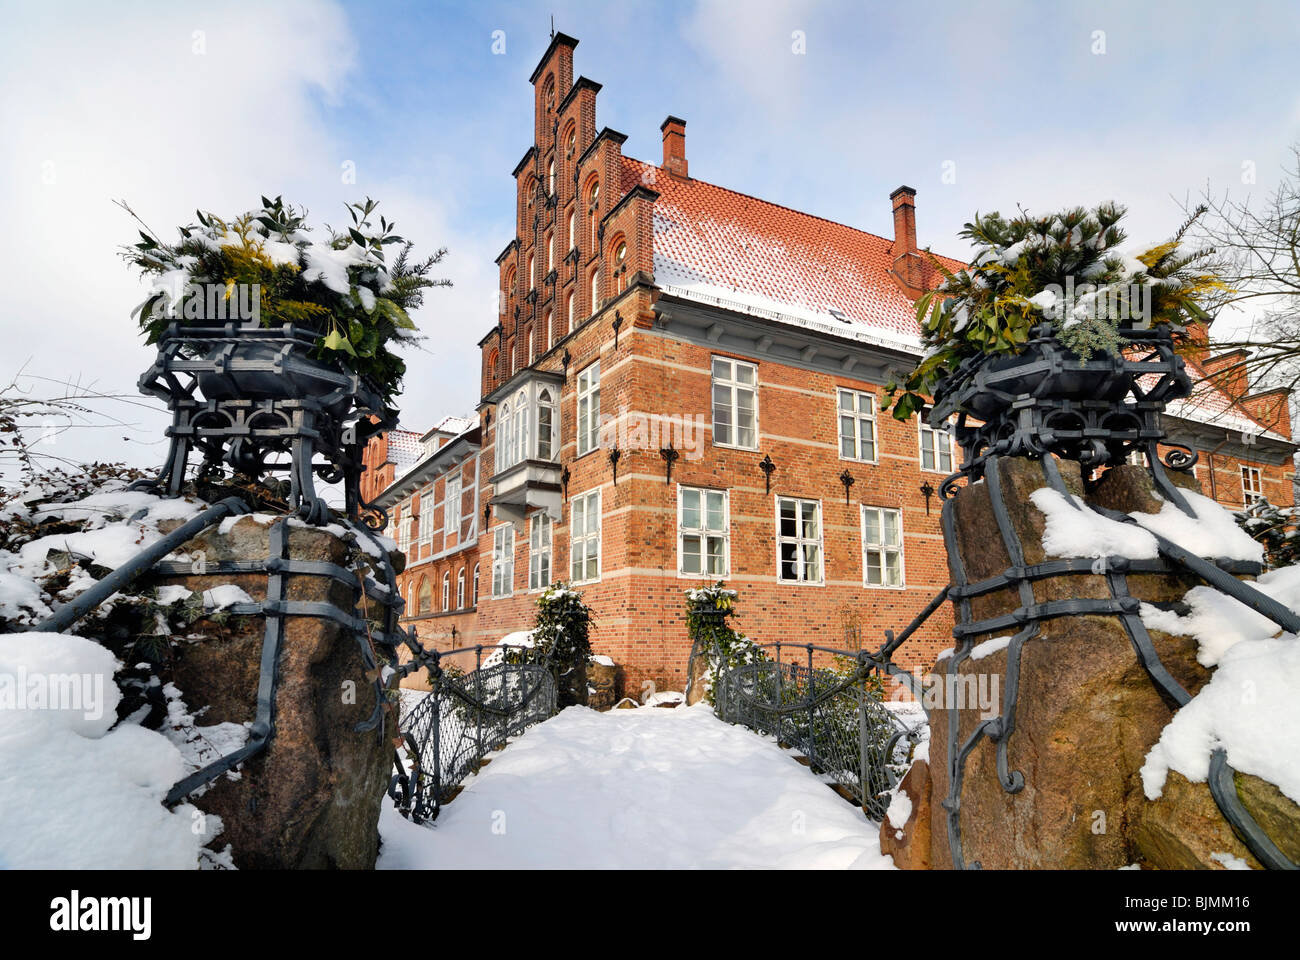 Die Bergedorfer Schloss Burg im Winter in Bergedorf, Hamburg, Deutschland, Europa Stockfoto